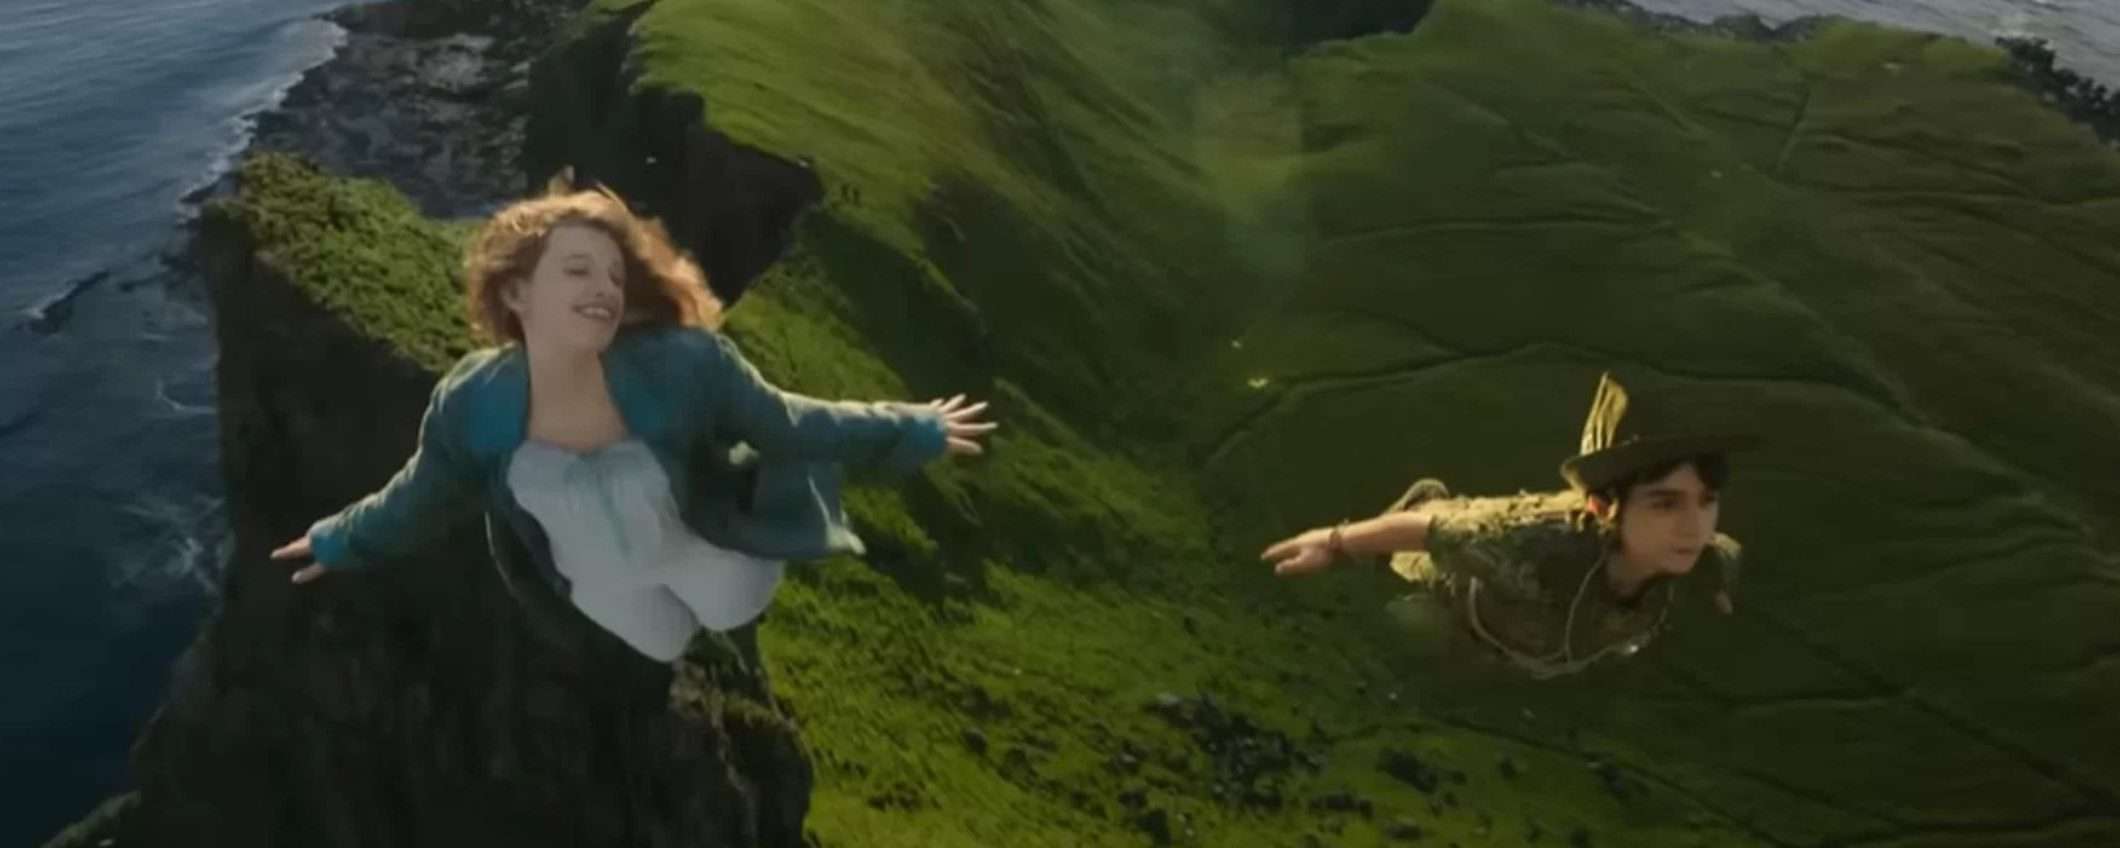 Peter Pan & Wendy: fan all’attacco per questa scelta nel cast